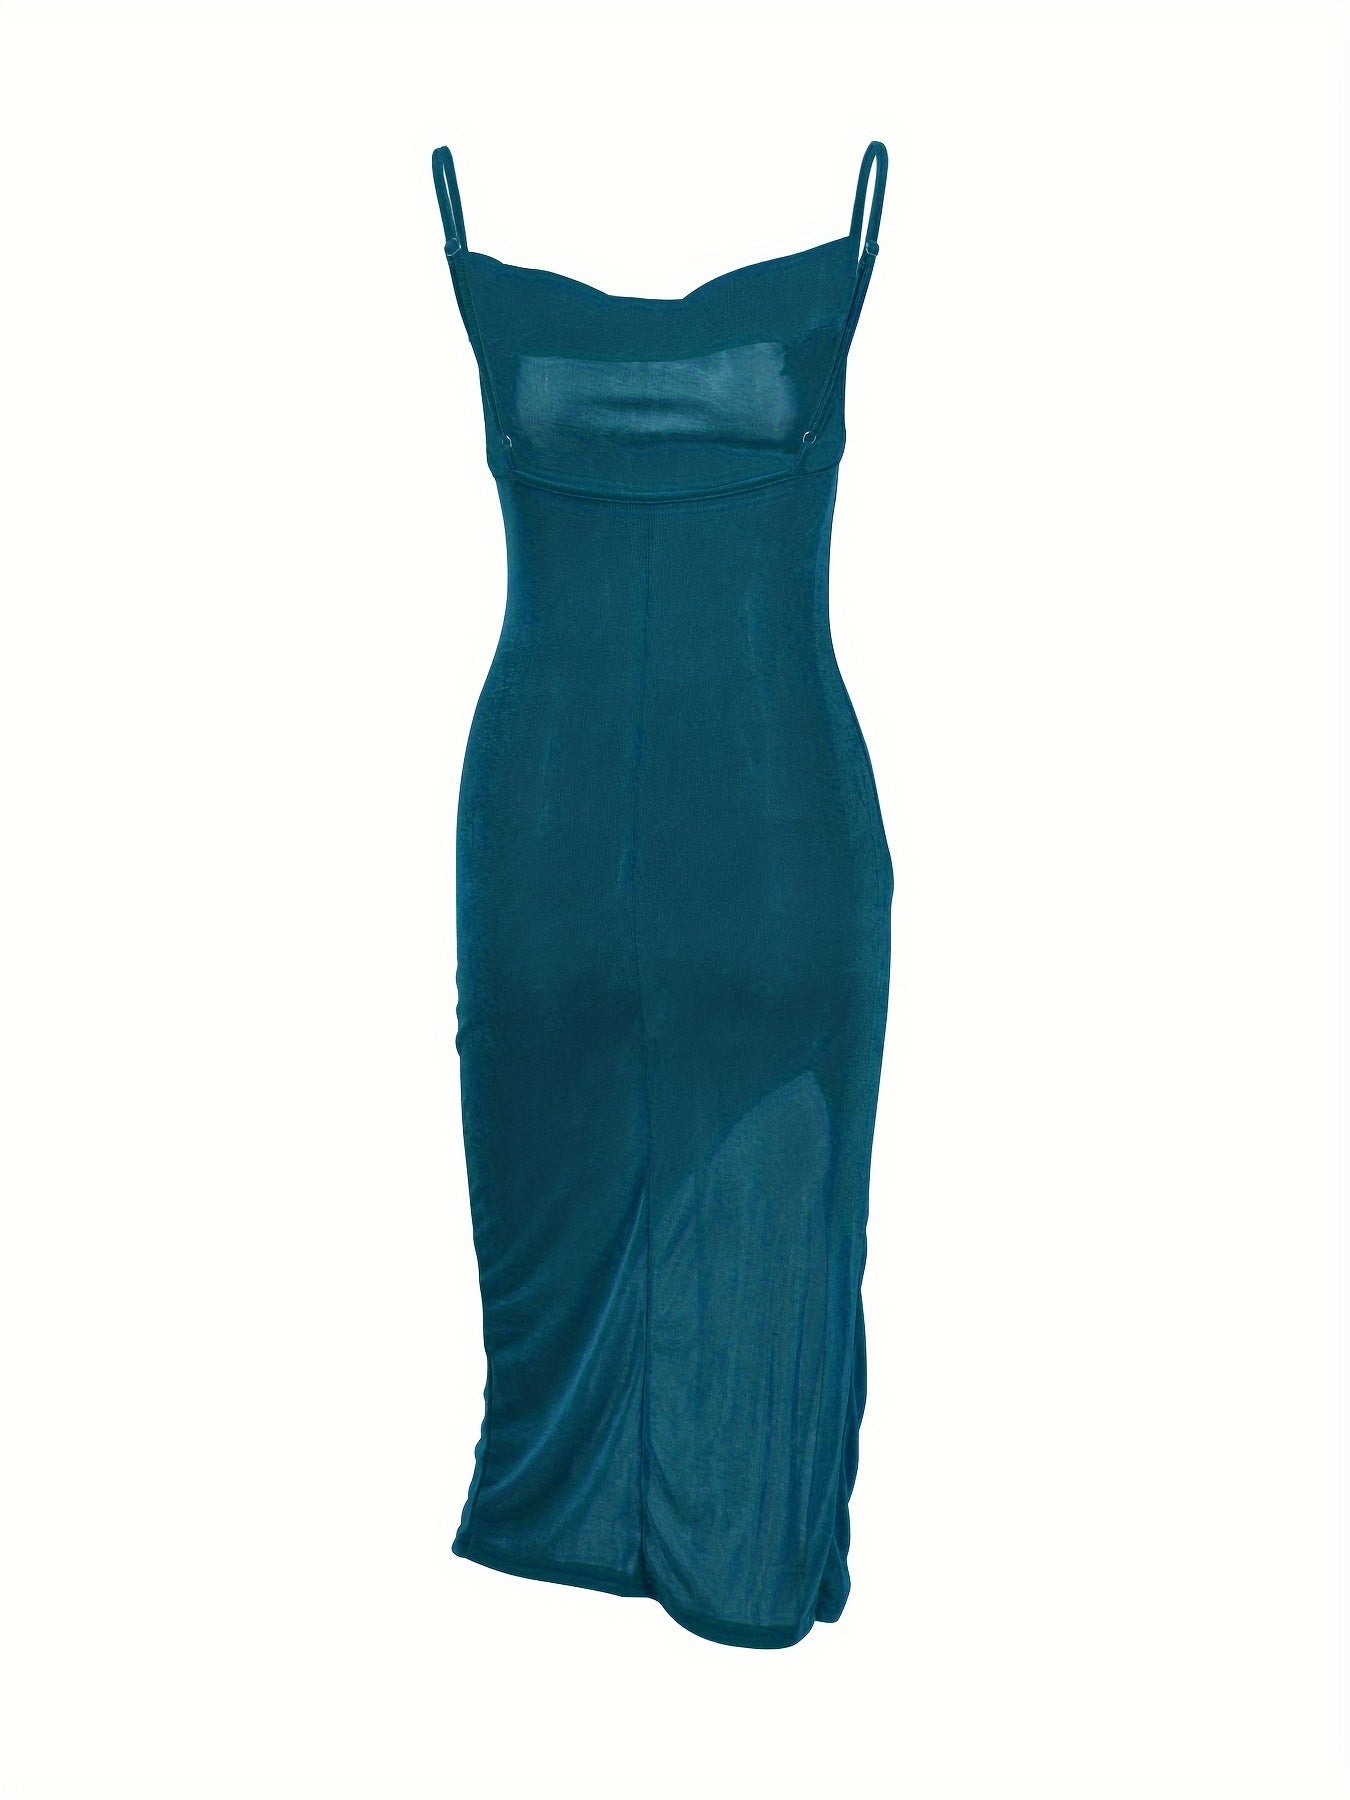 vzyzv  Solid Cowl Neck Cami Dress, Elegant Split Dress For Spring & Summer, Women's Clothing